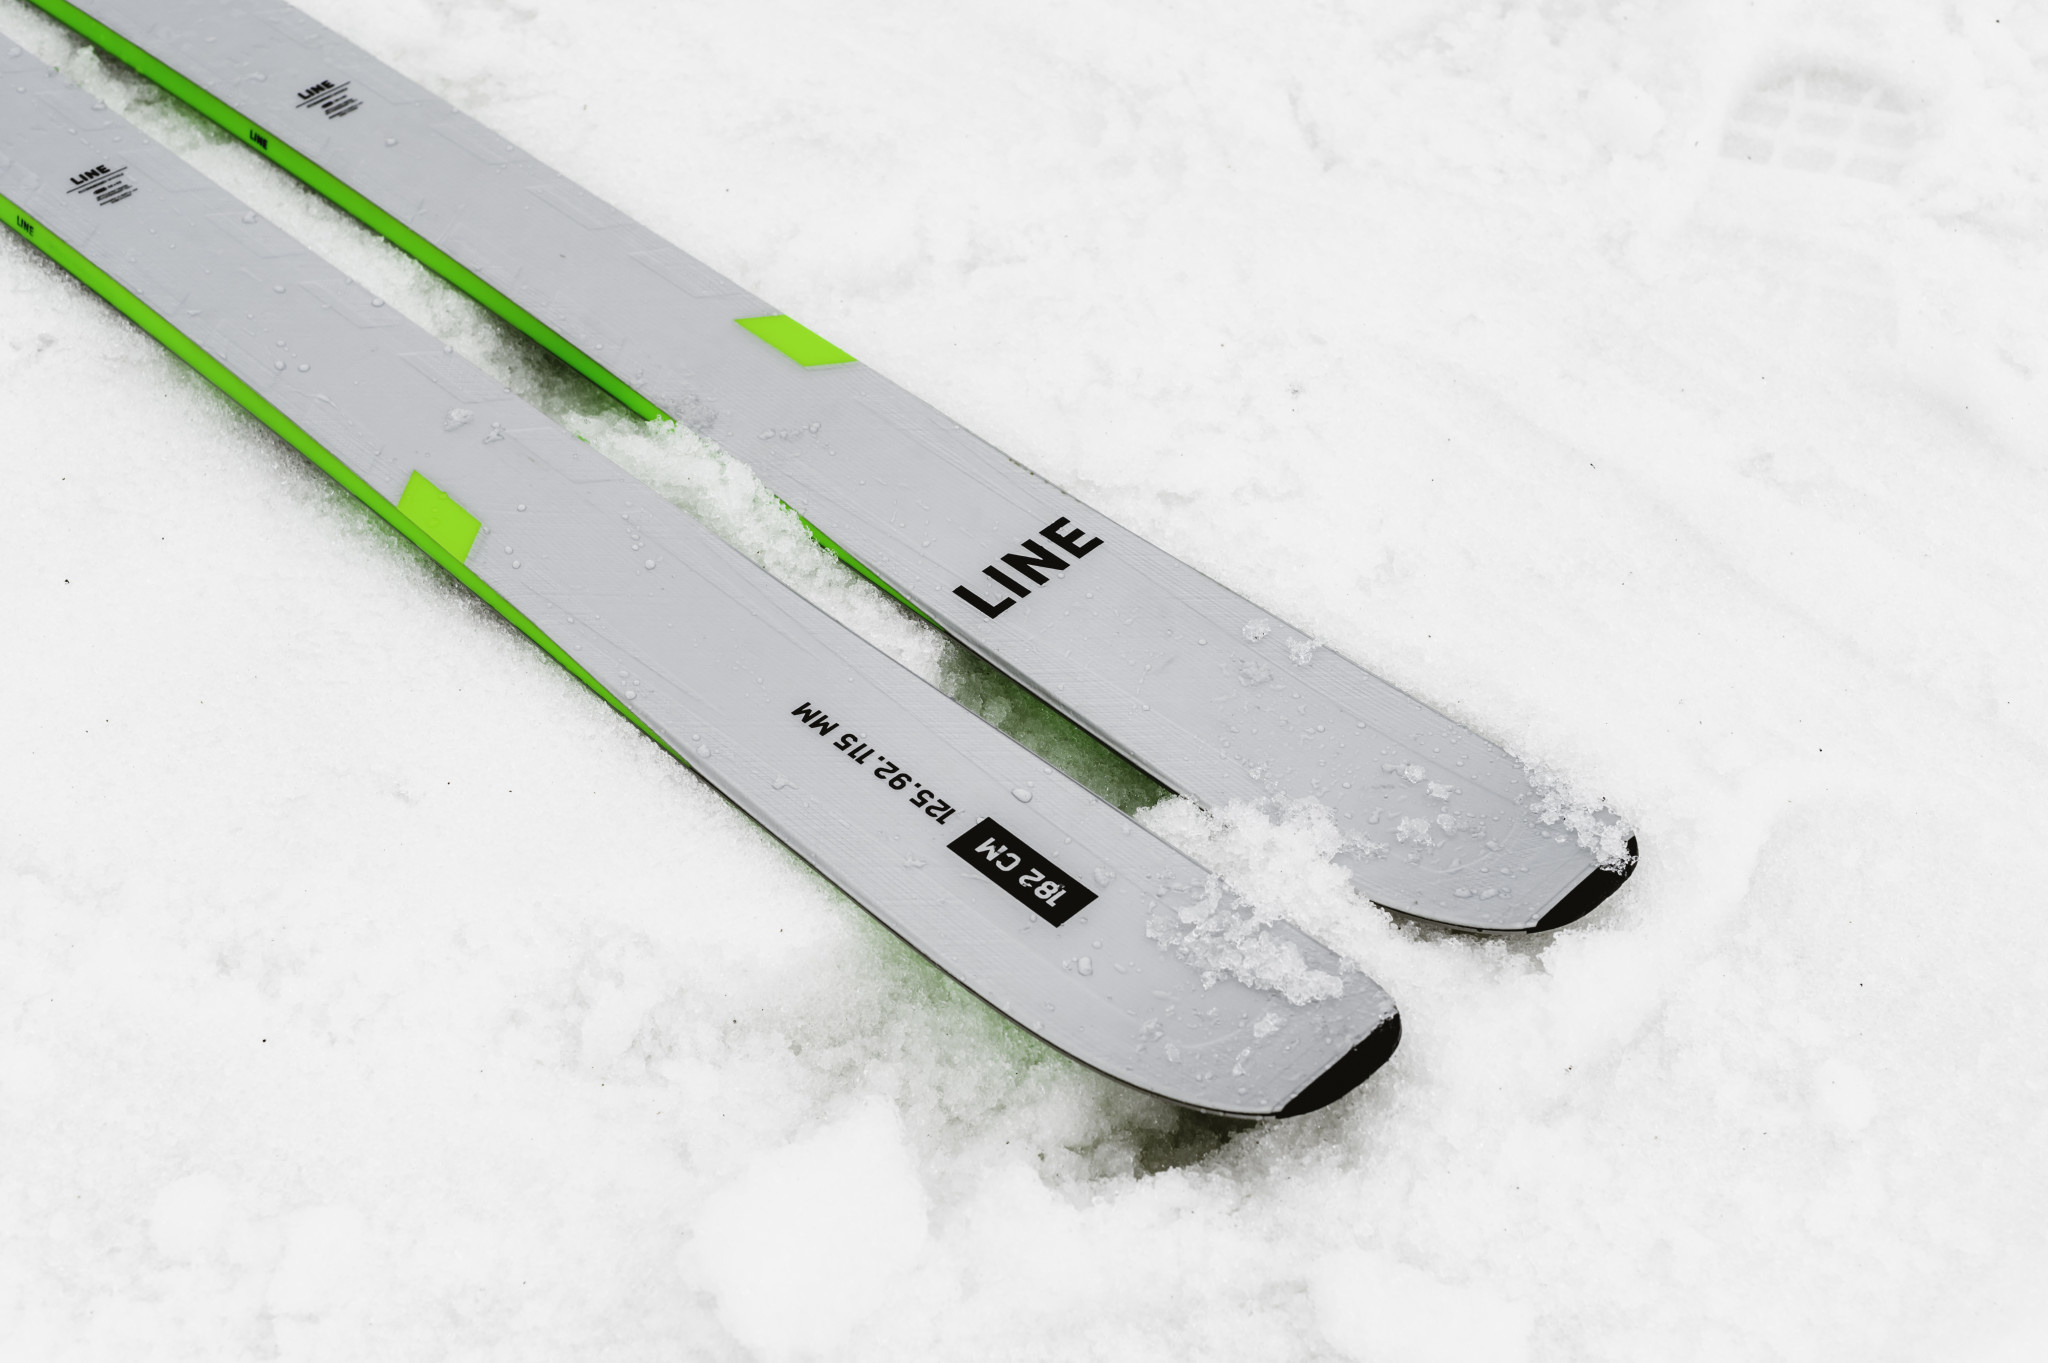 LINE Line M's Blade Optic 92 Ski